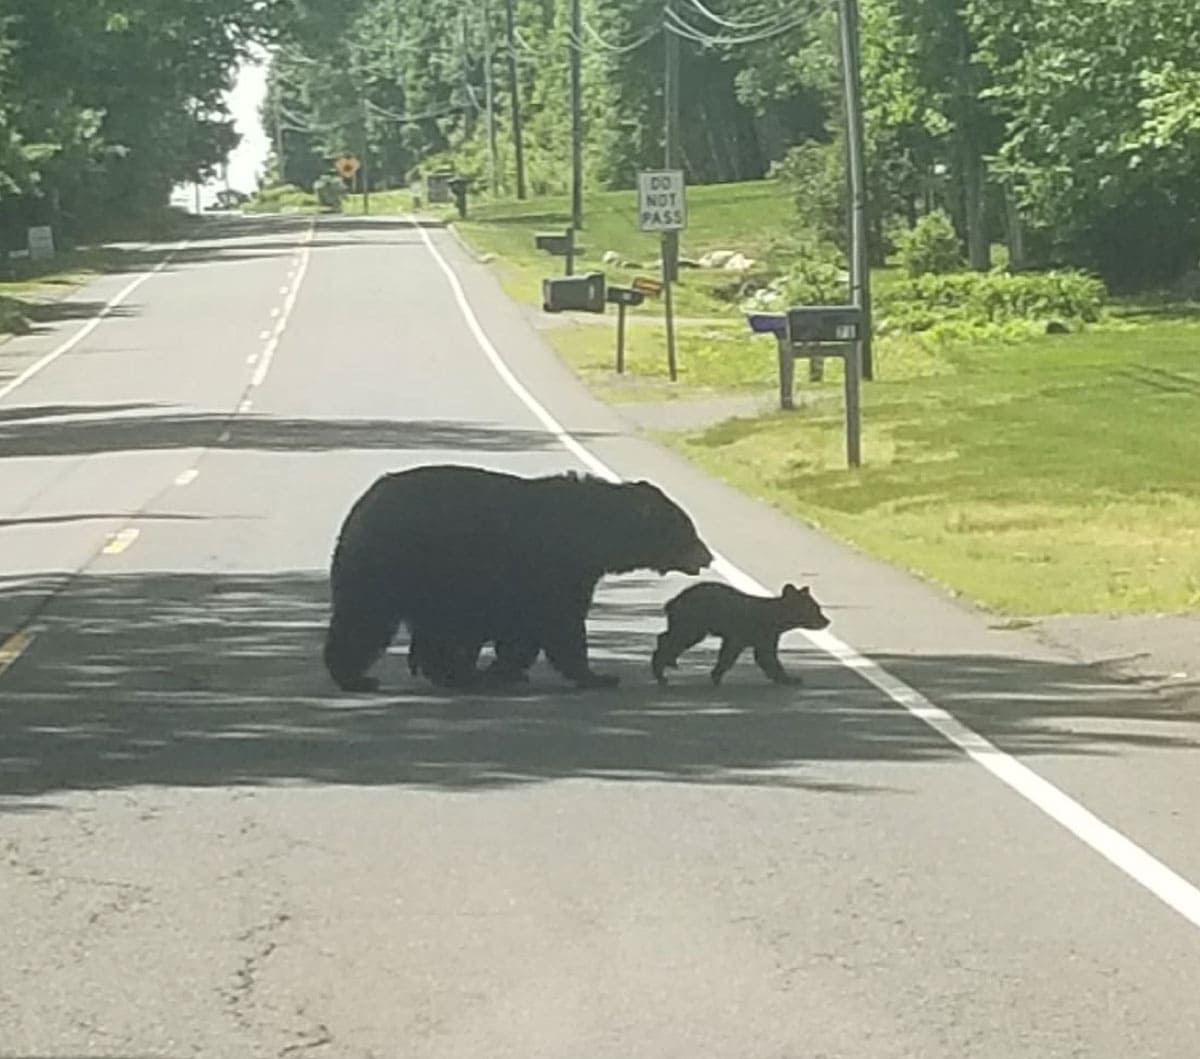 Bears crossing a street